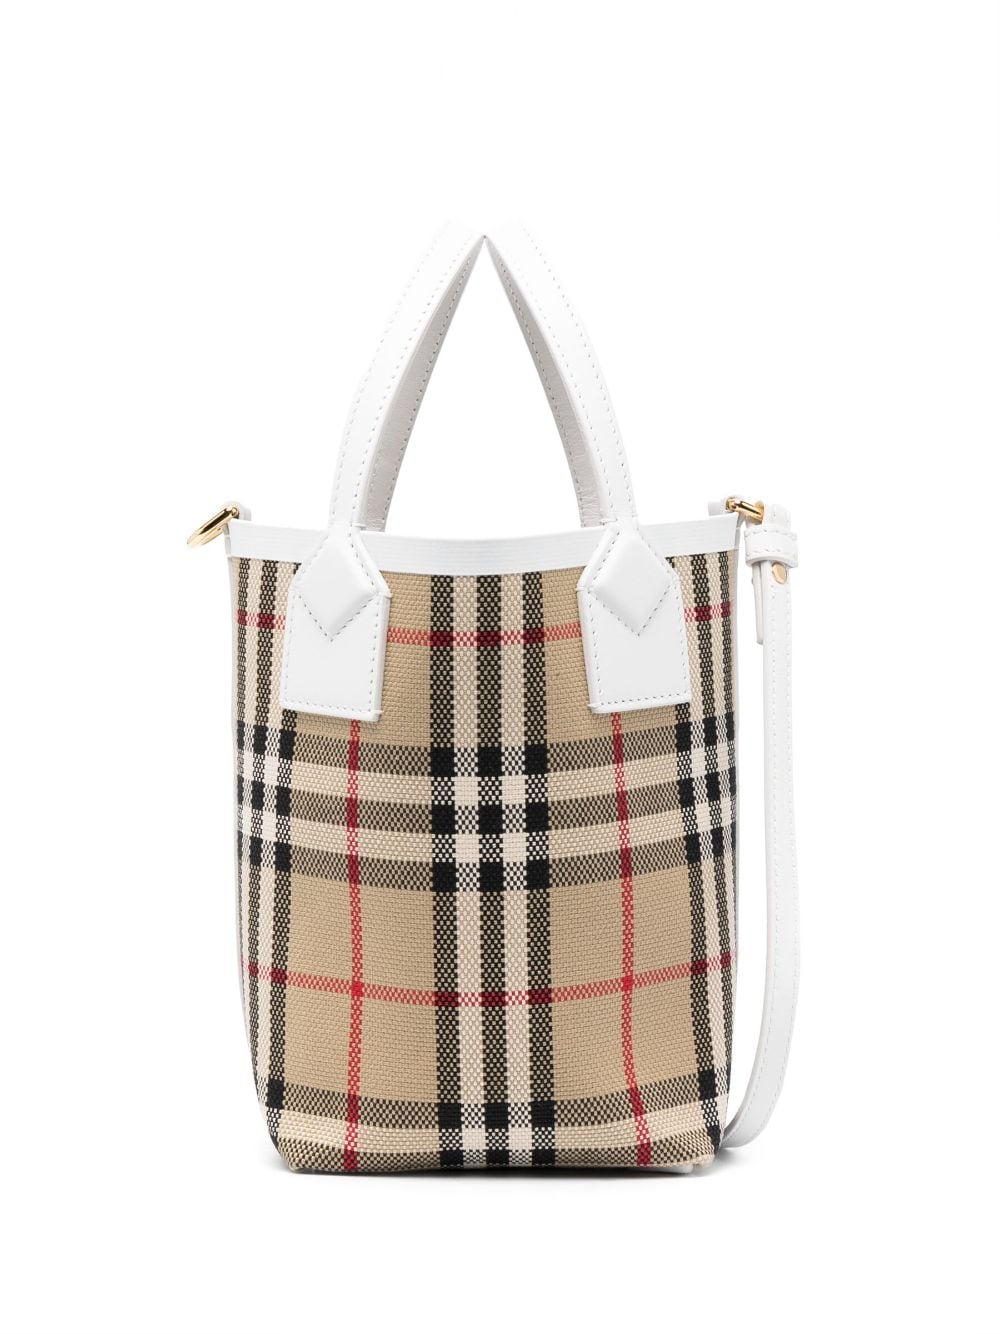 Túi xách thời trang cho phái đẹp với phong cách cổ điển từ Burberry